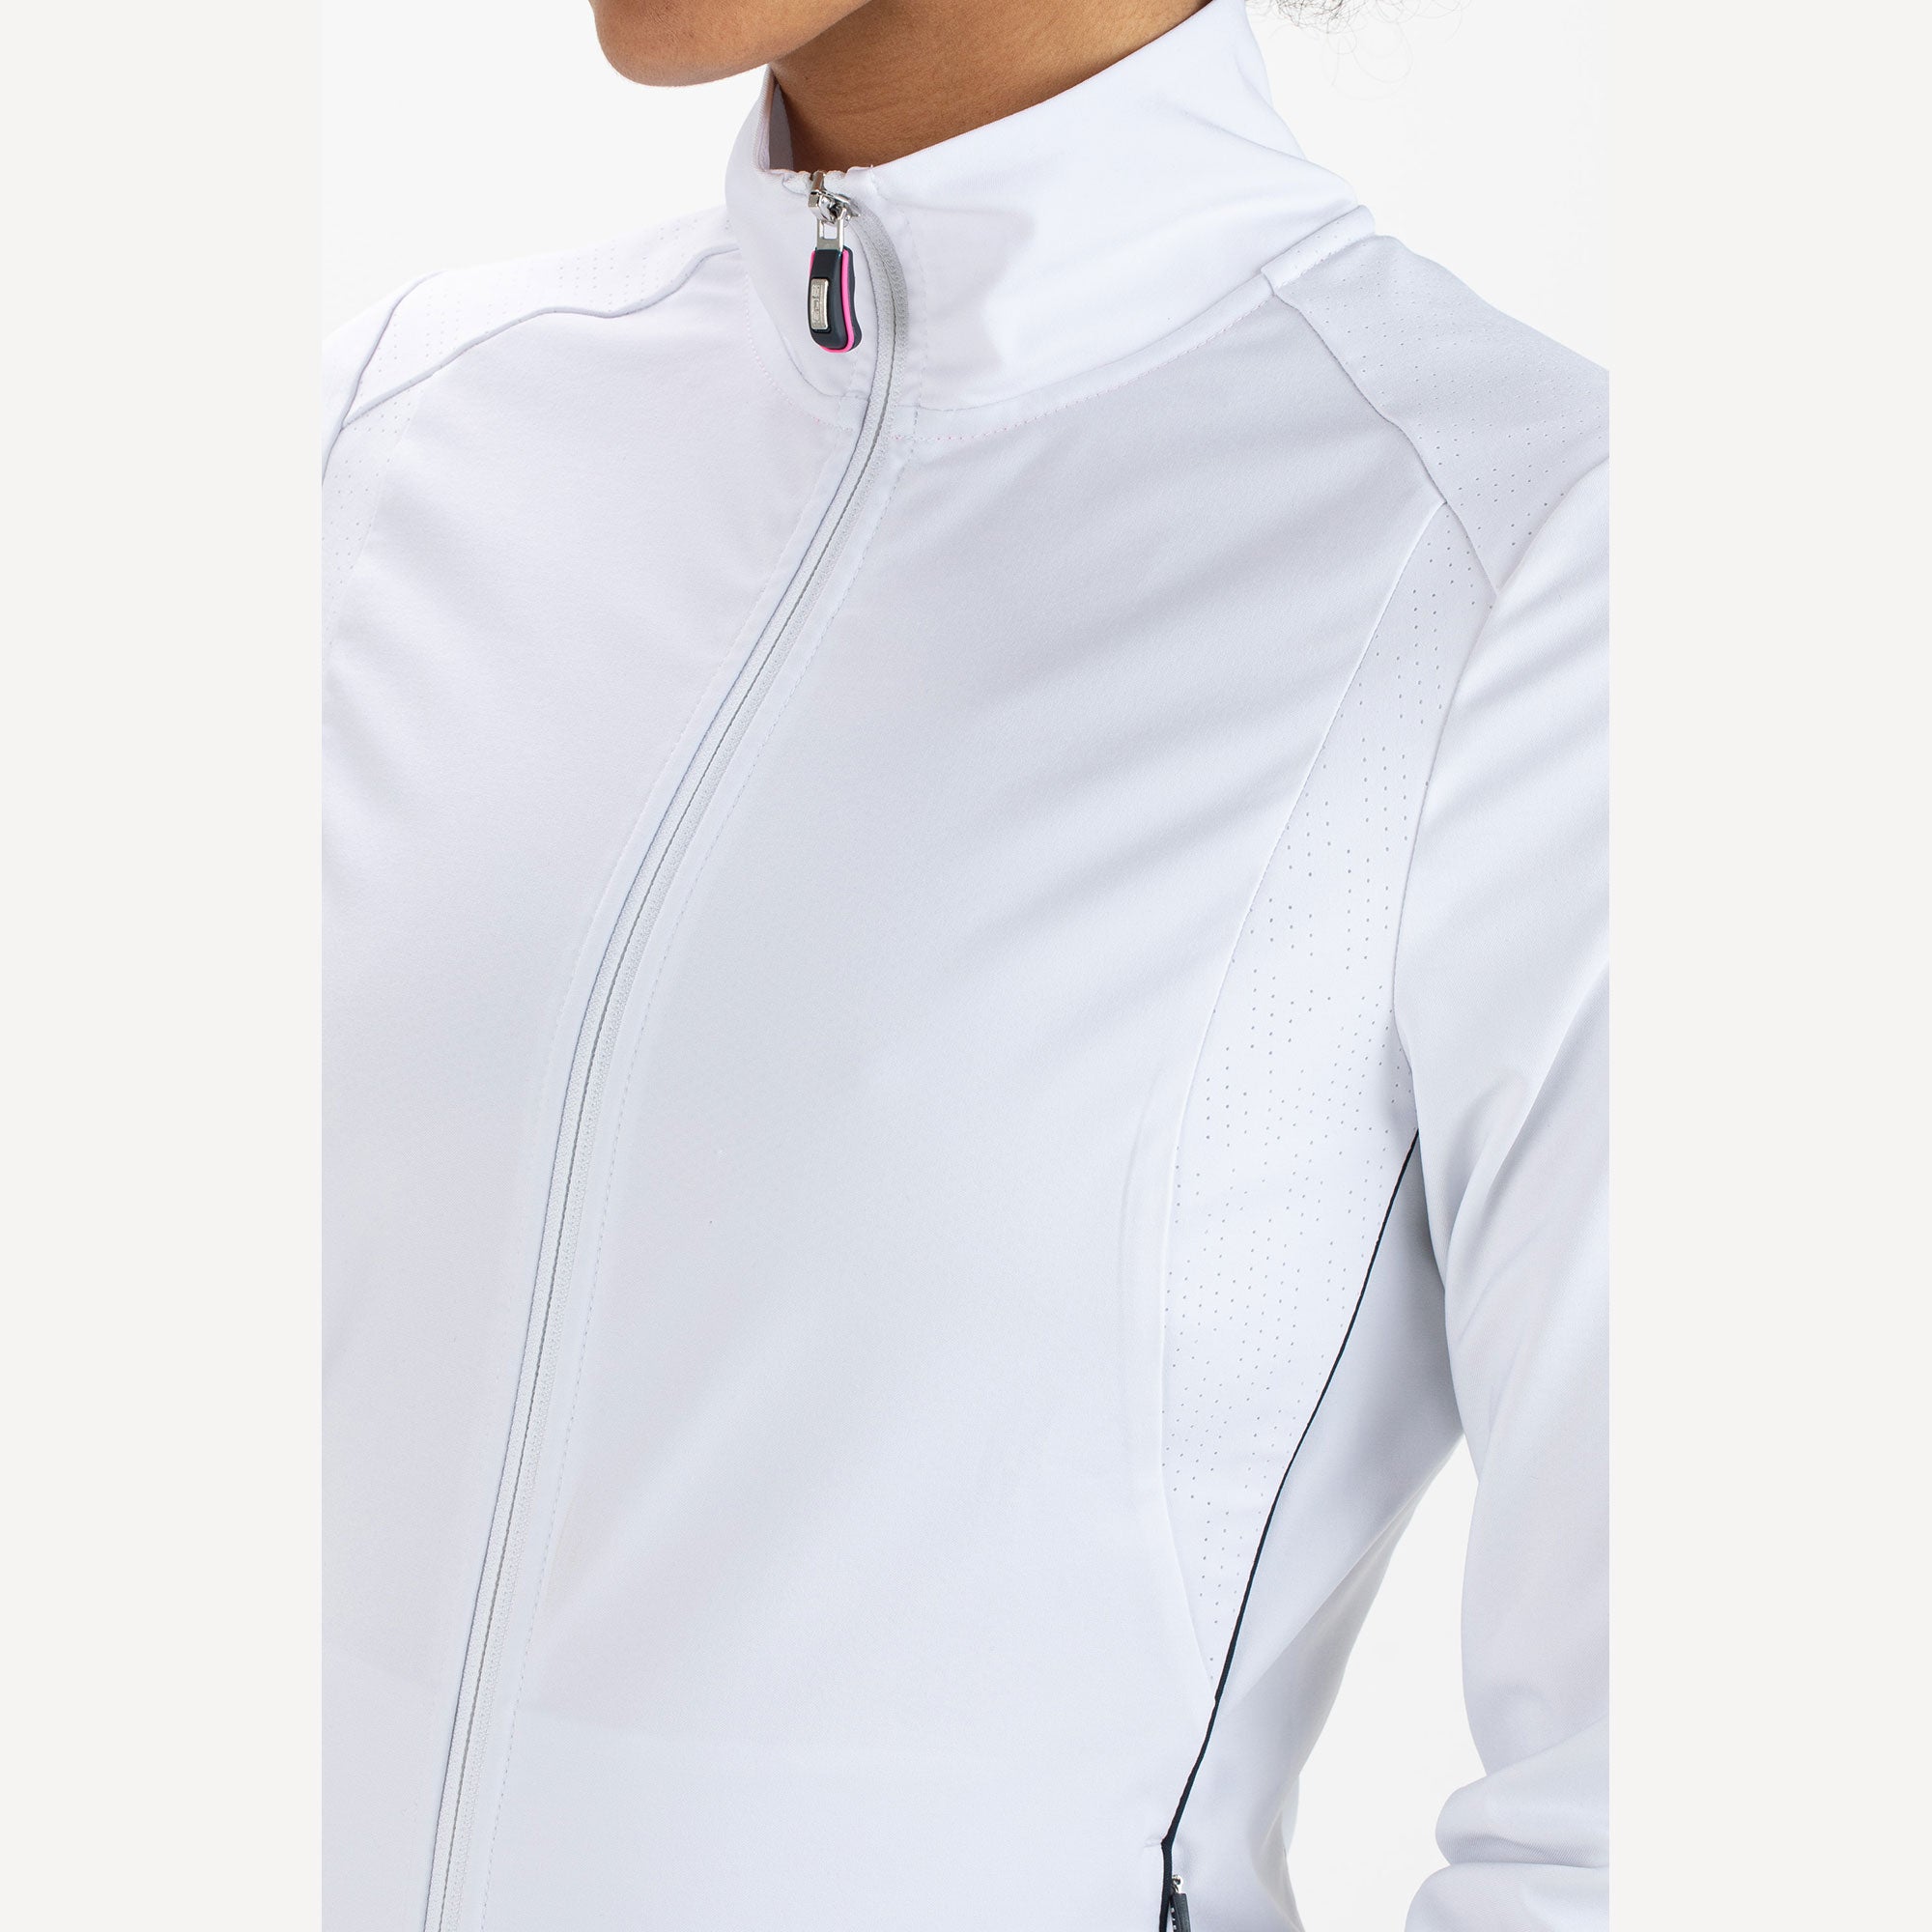 Sjeng Sports Annelyn Women's Woven Tennis Jacket White (3)